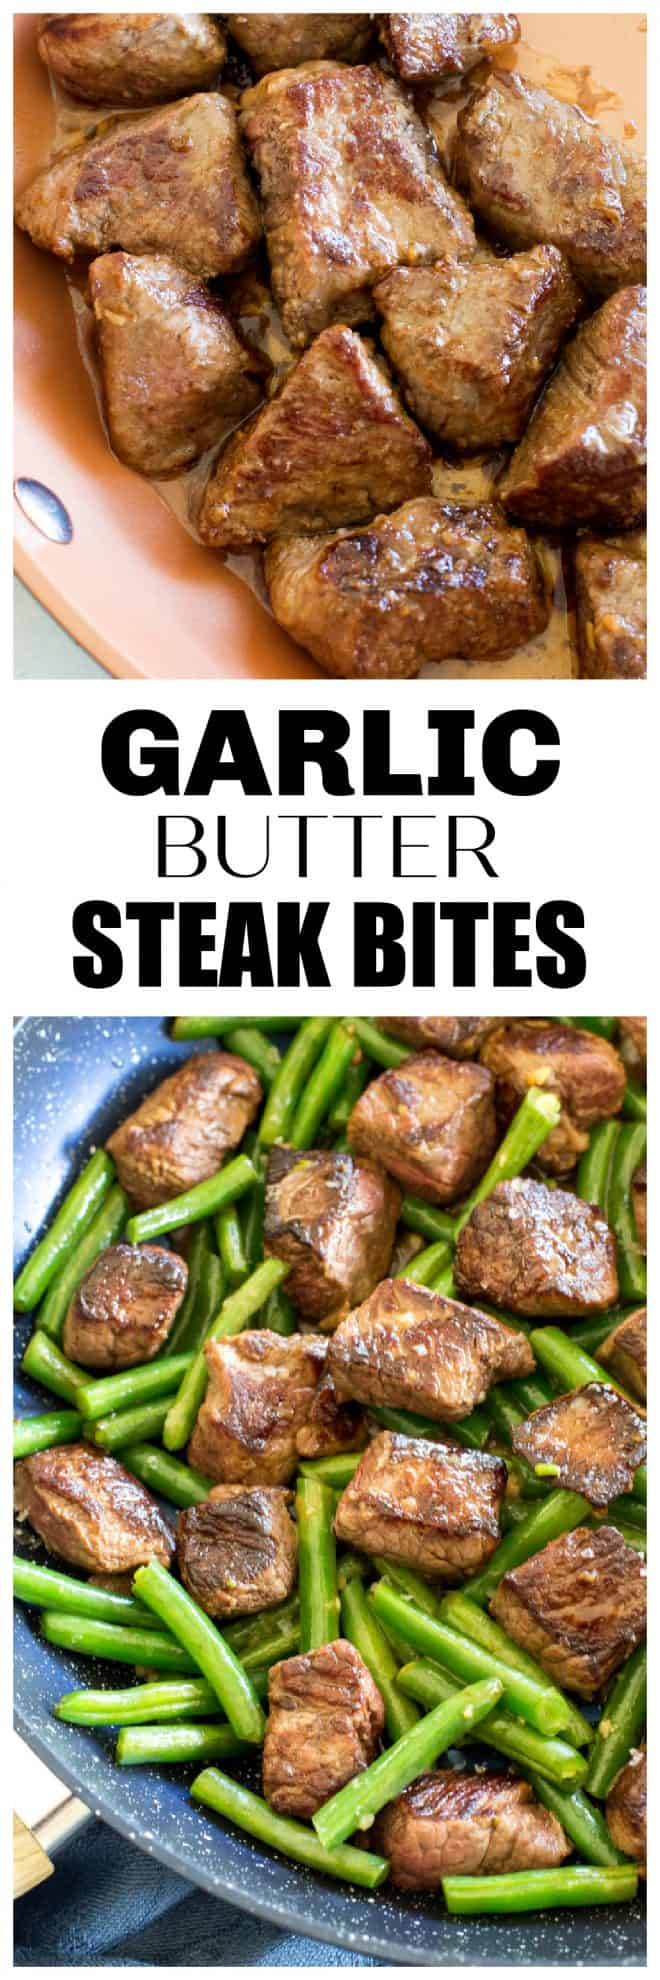 garlic butter steak bites - Garlic Butter Steak Bites